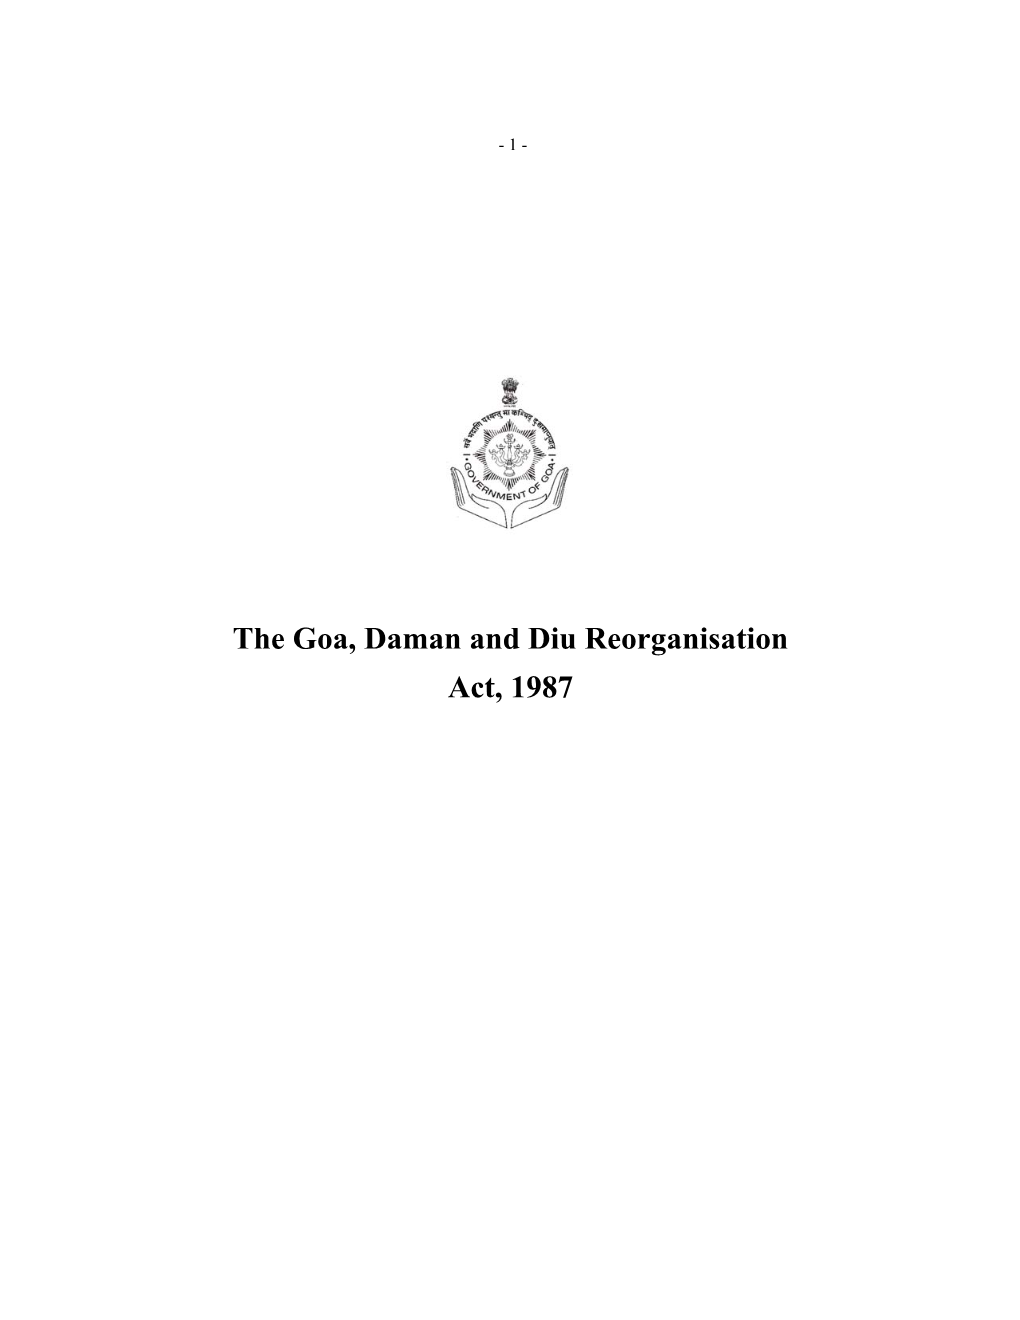 The Goa, Daman and Diu Reorganisation Act, 1987